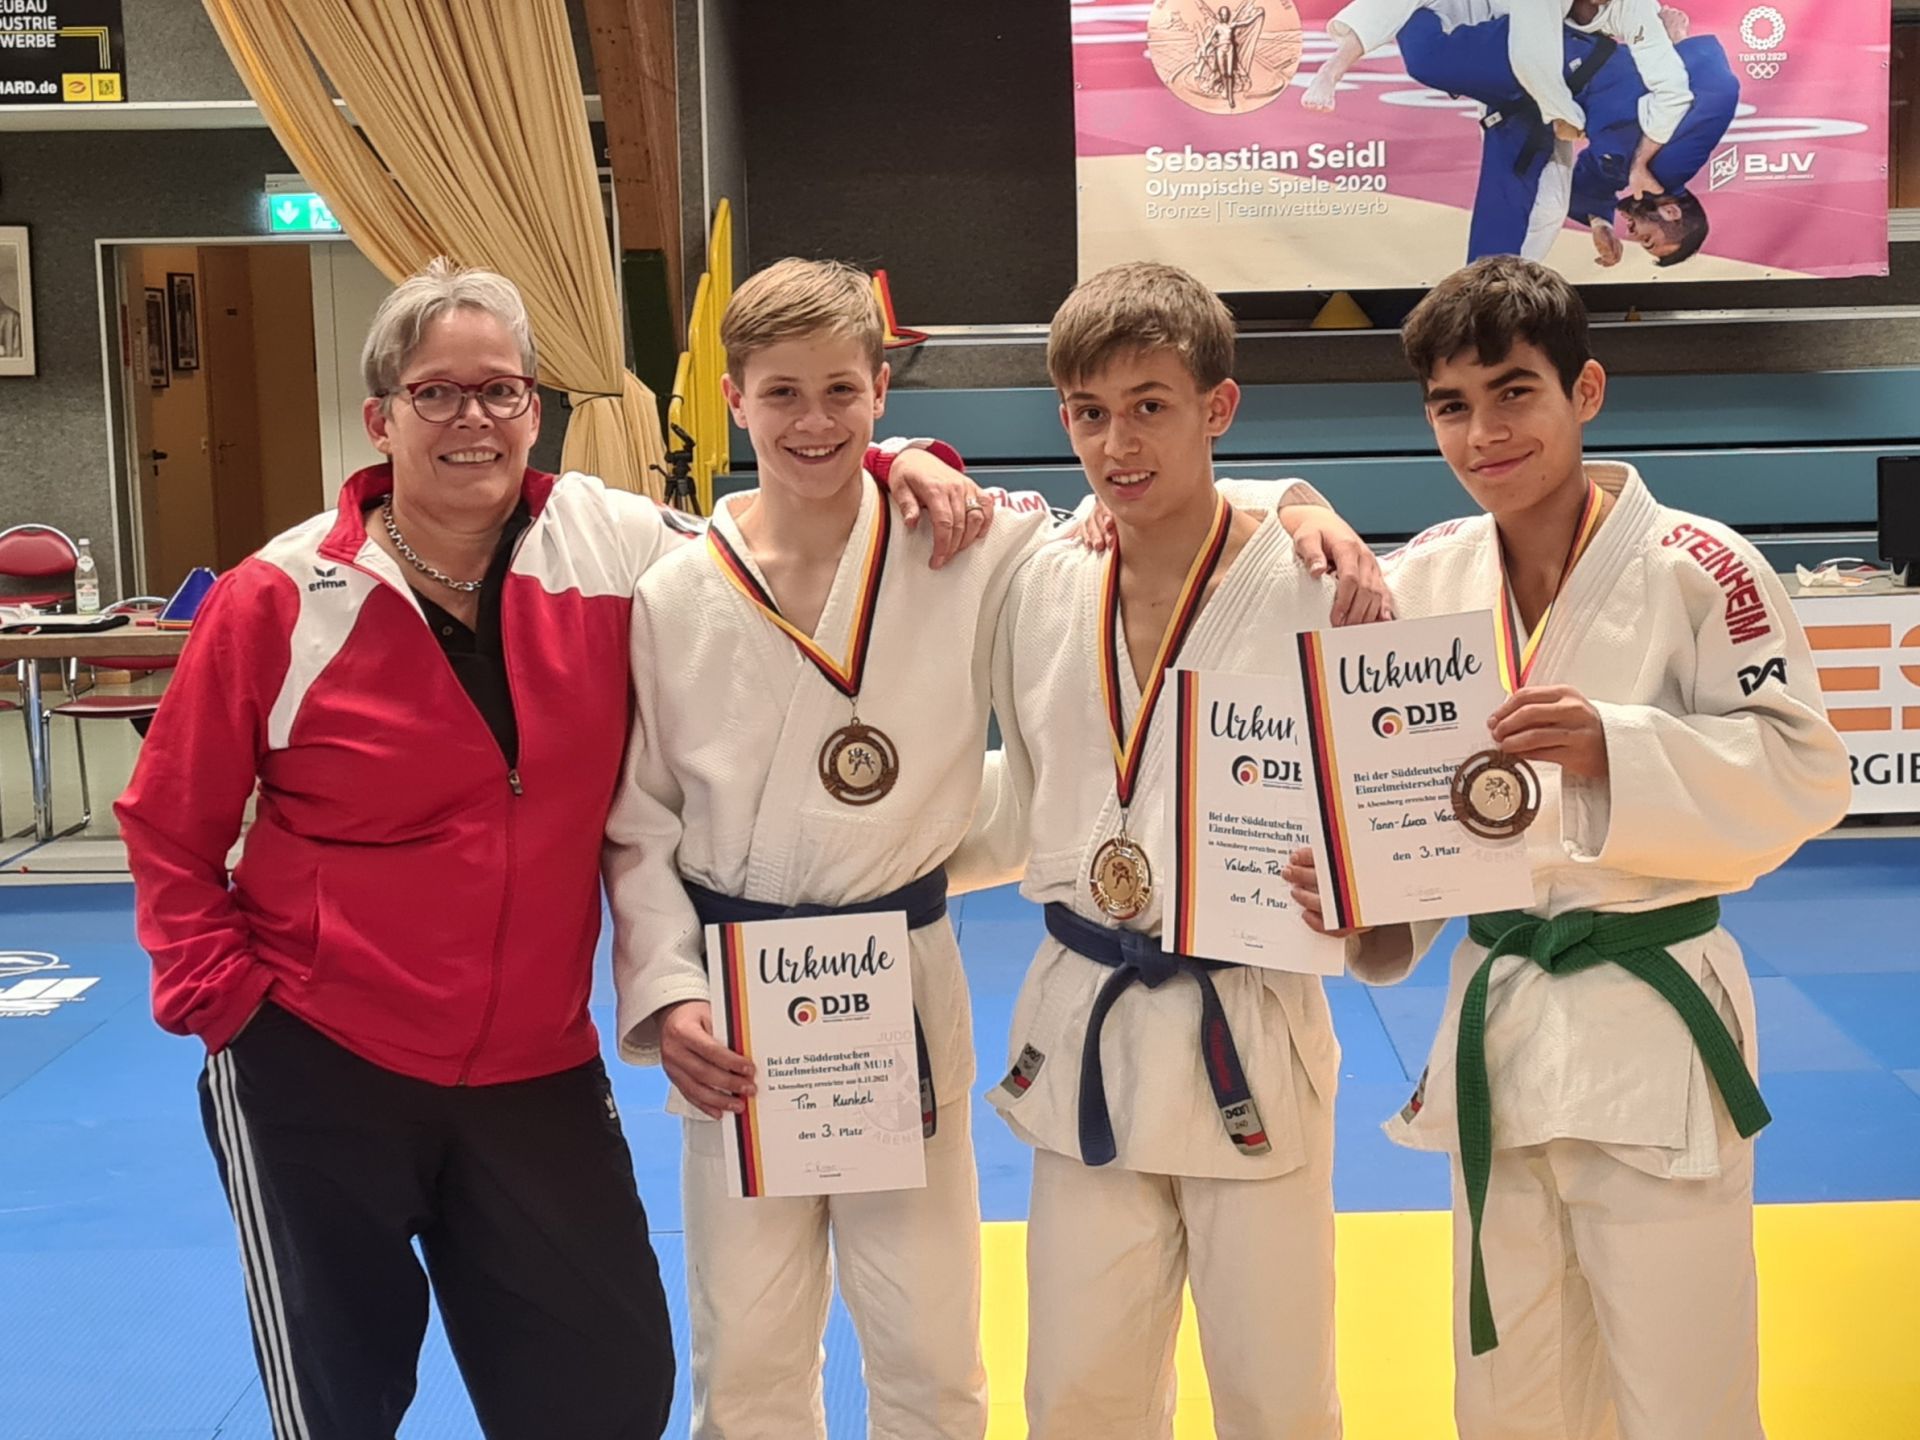 Judo: Tim Kunkel erzielt den 3. Platz bei den U15 Süddeutschen Meisterschaften